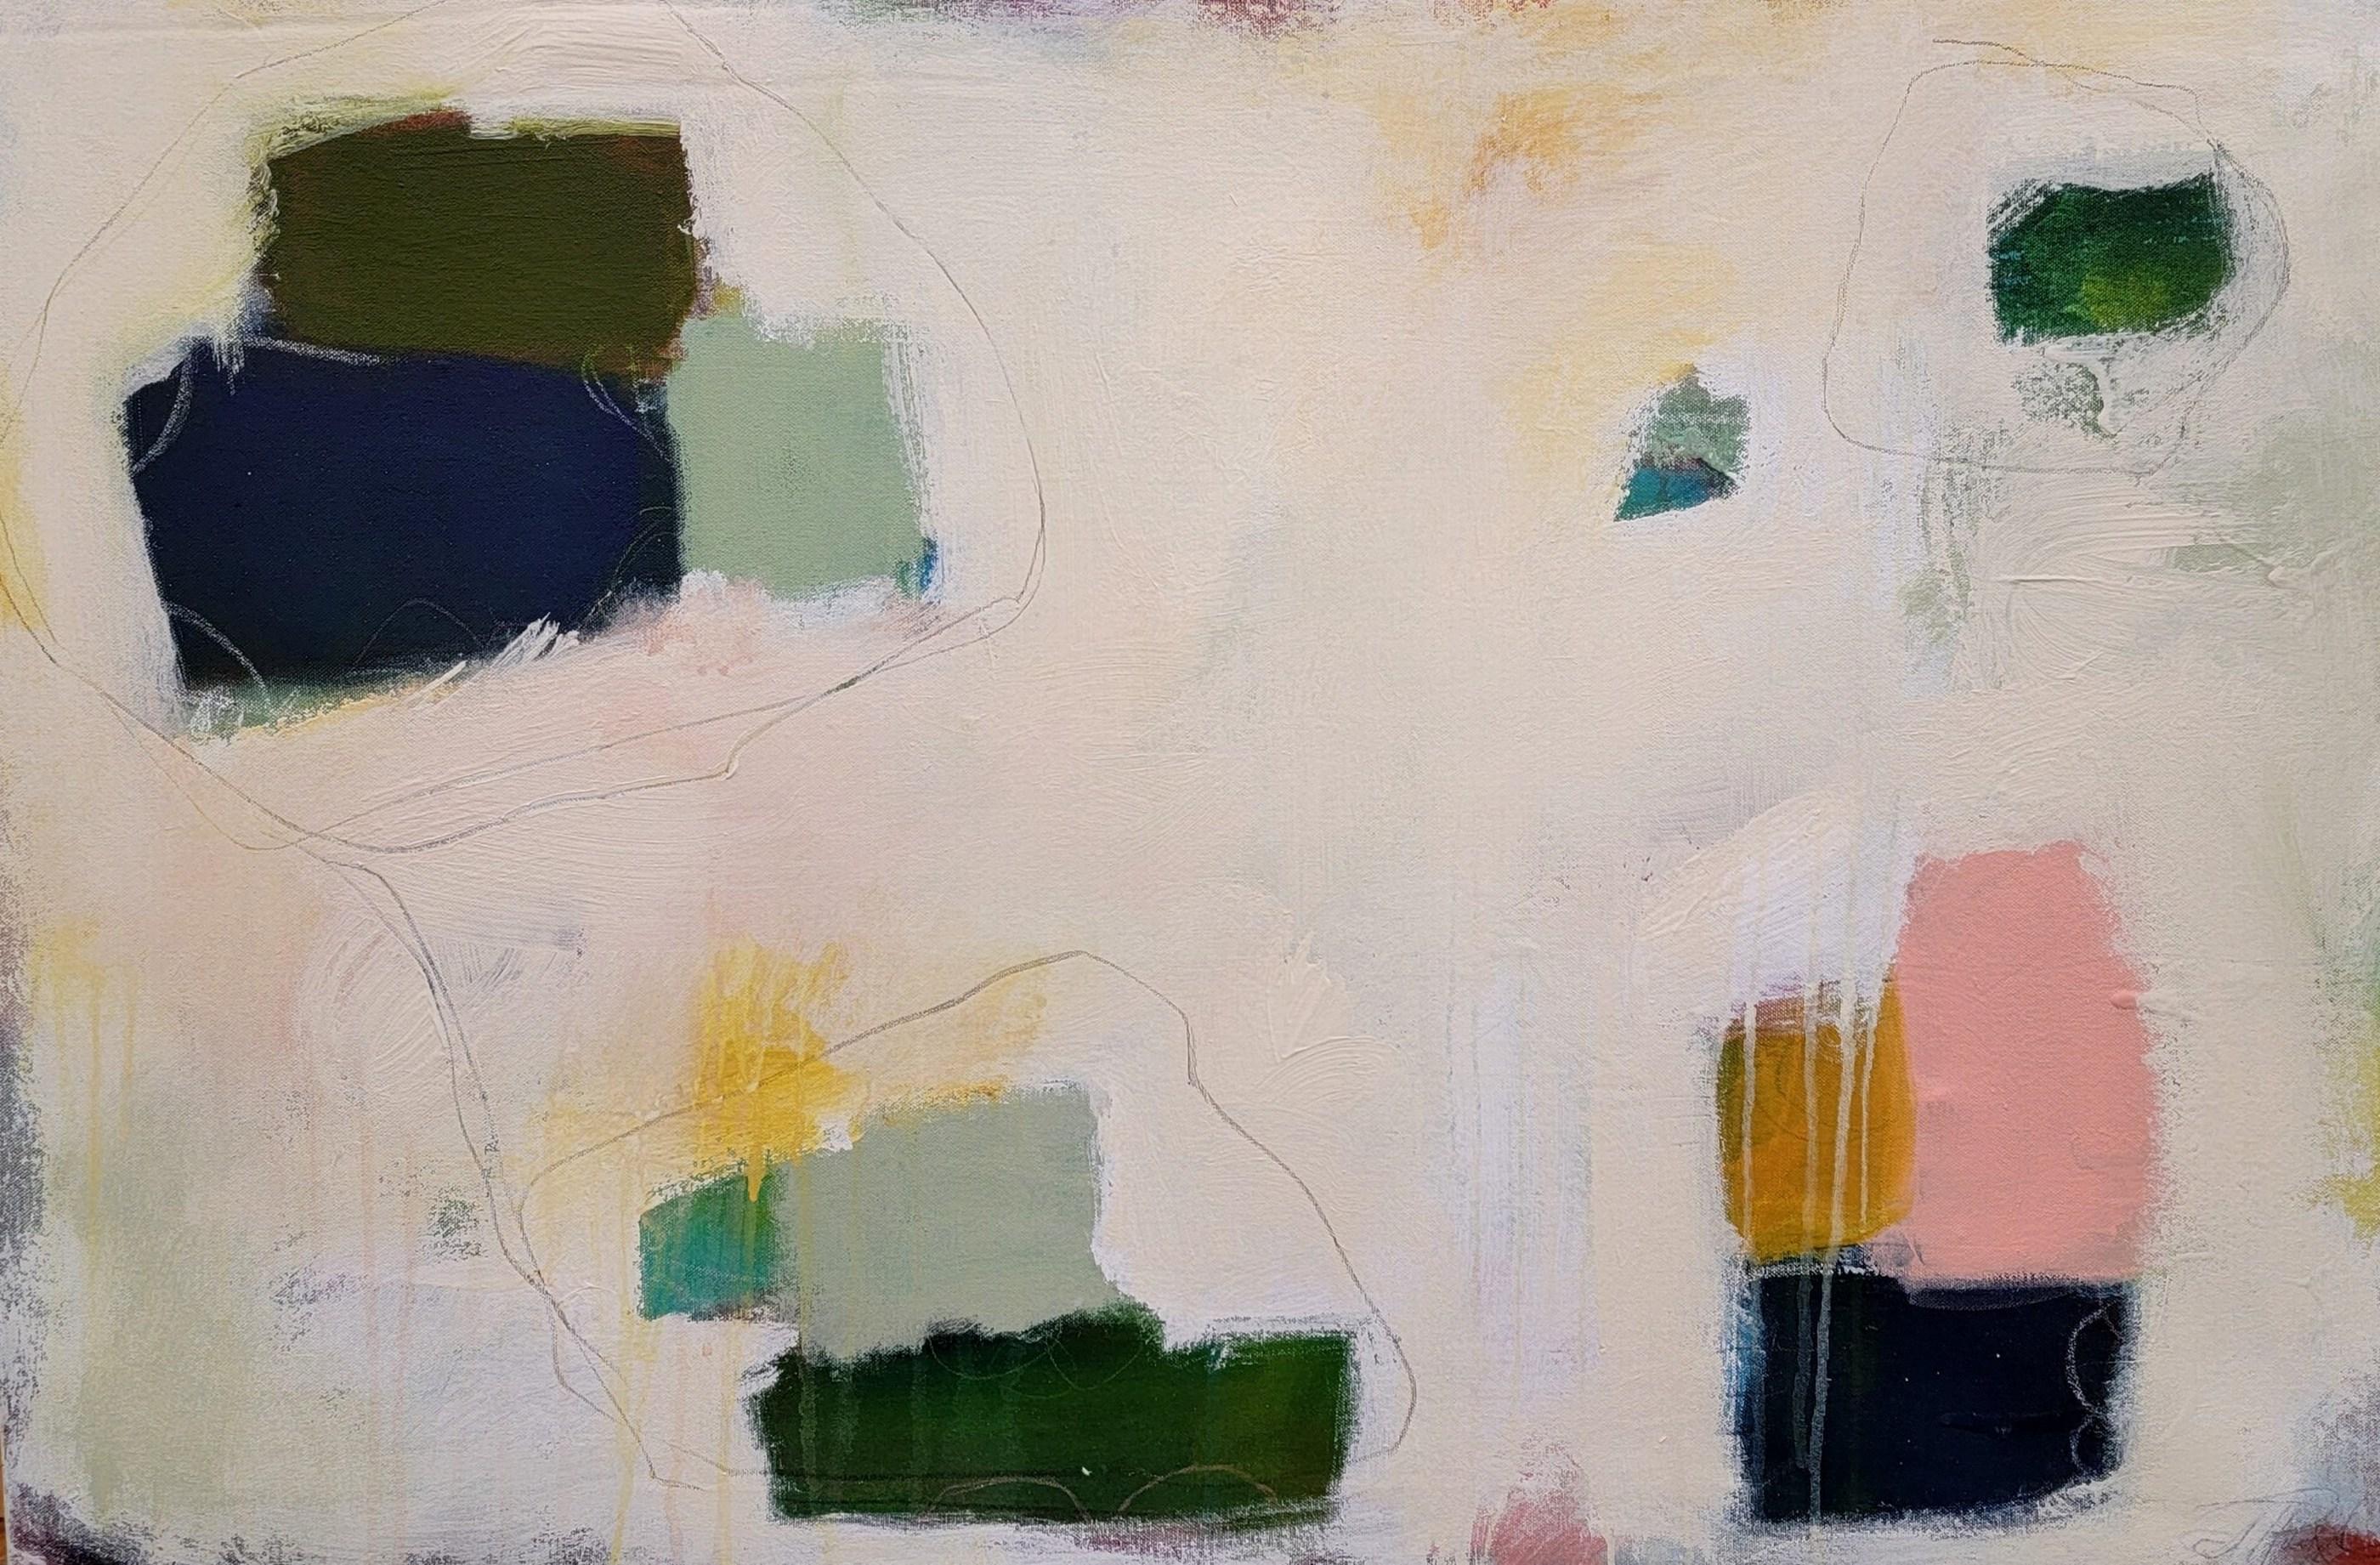 Abstract Painting Jennifer Bricker-Pugh - Harvest and Thread (~55% de remise sur le prix de la liste - ÉTAT LIMITÉE uniquement!)